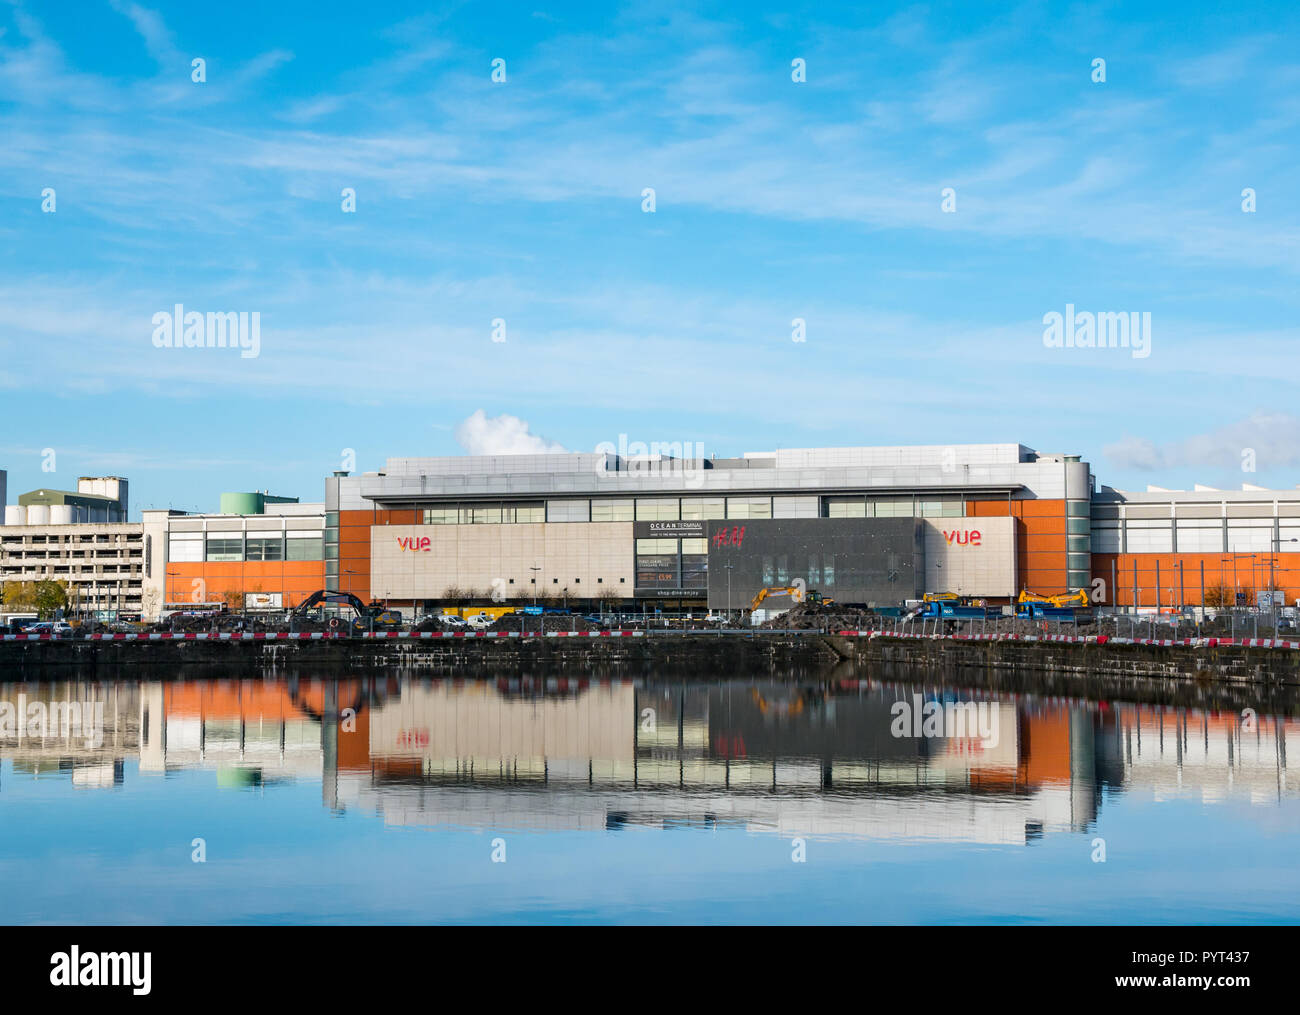 Vista di Ocean Terminal con H&M e logo Vue Cinema logo riflessi nell'acqua di Victoria dock in una giornata di sole, Leith, Edimburgo, Scozia, Regno Unito Foto Stock